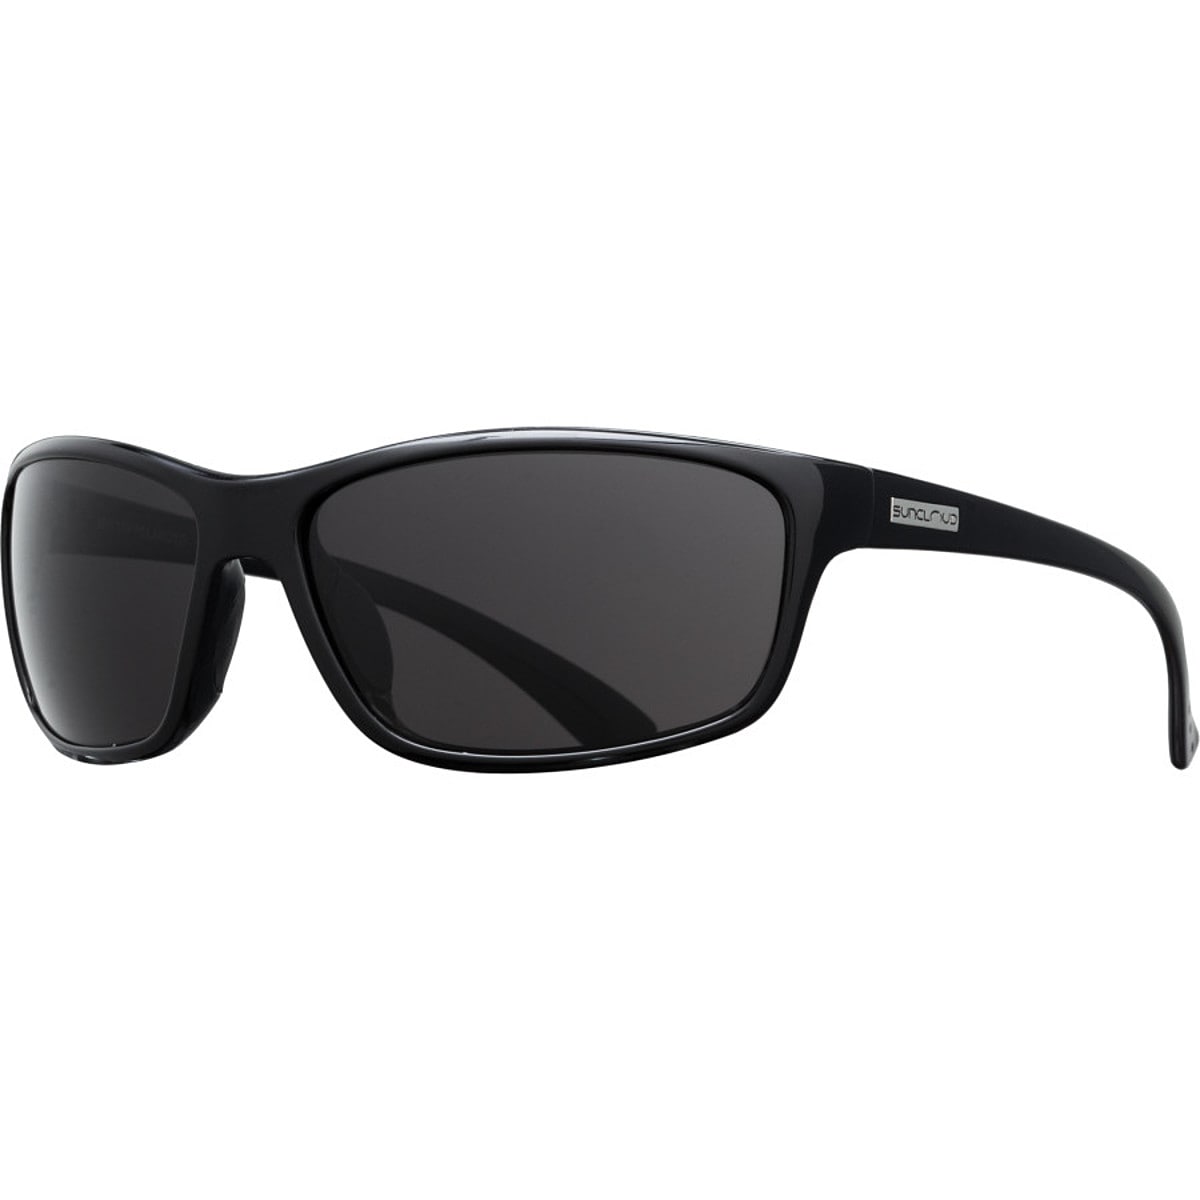 Поляризованные солнцезащитные очки sentry Suncloud Polarized Optics, цвет black/gray очки солнцезащитные stylemark polarized l1454a